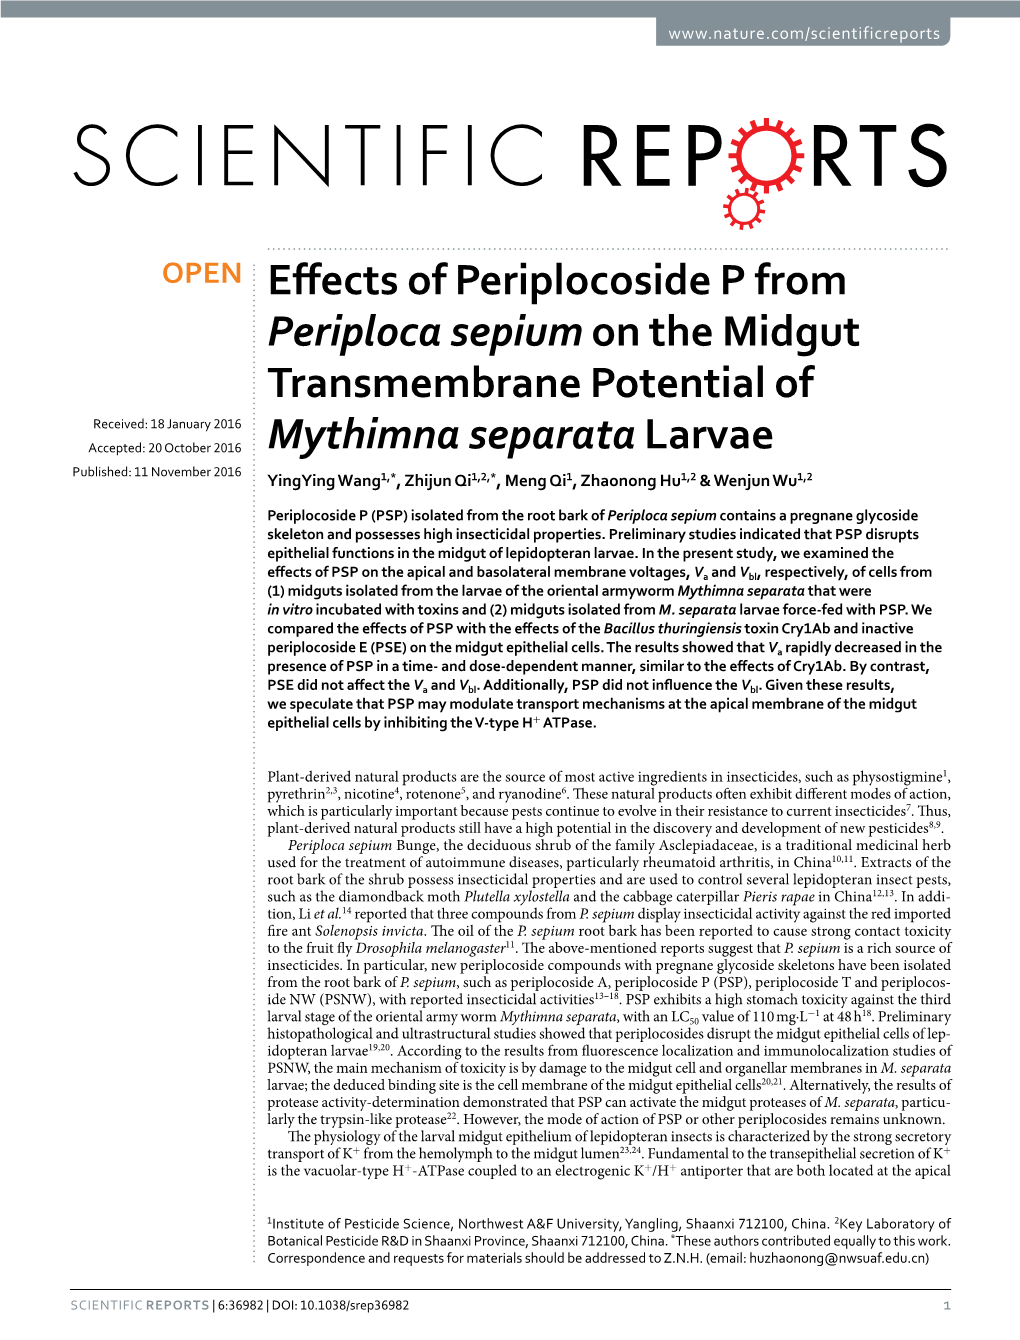 Effects of Periplocoside P from Periploca Sepium on the Midgut